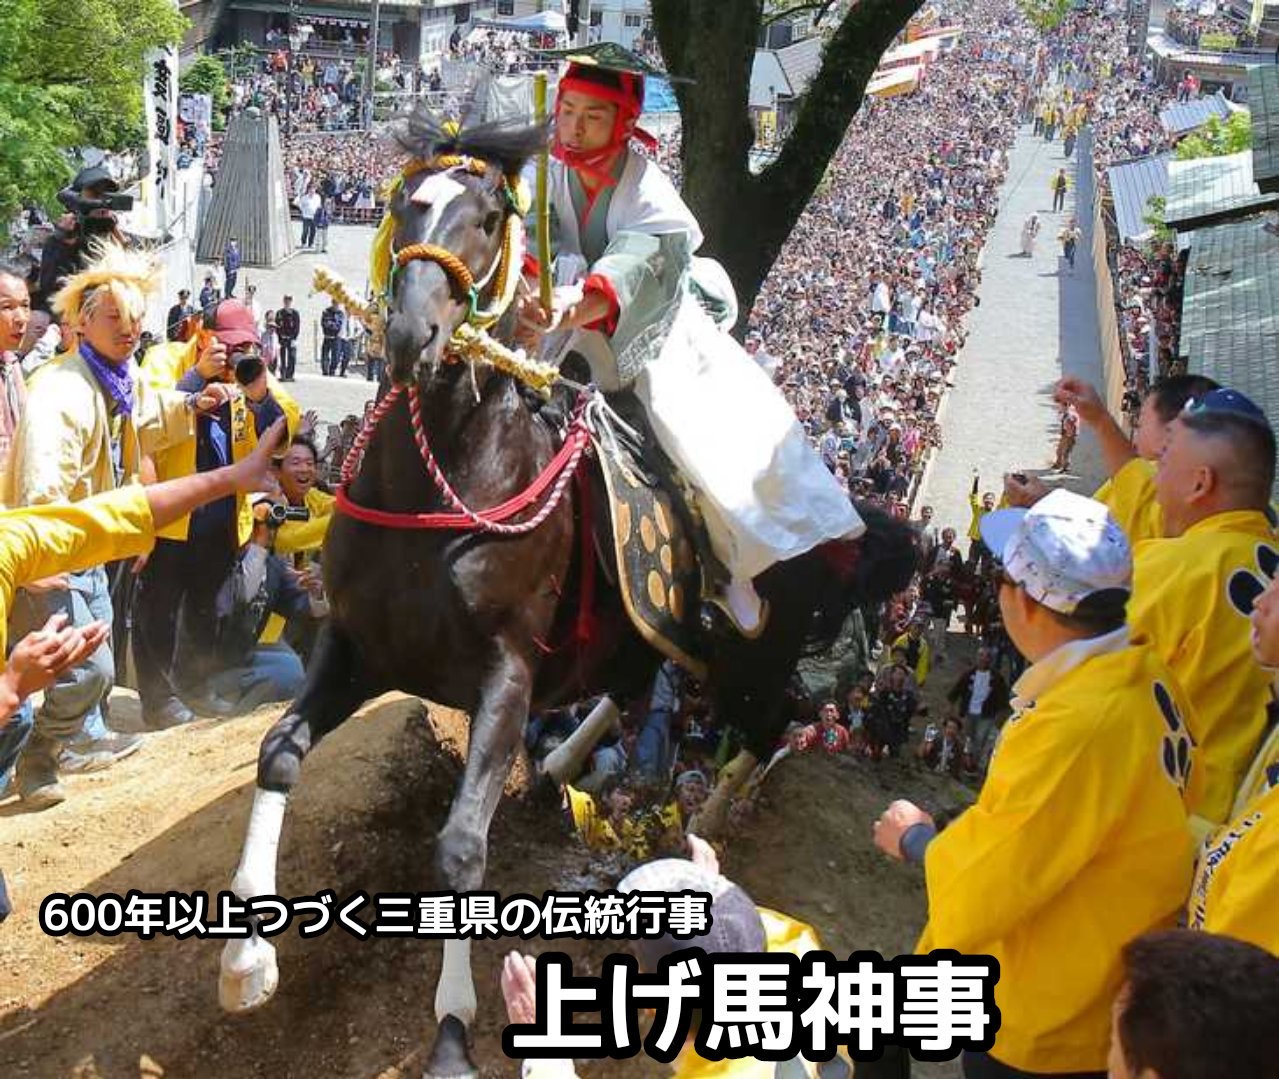 日本伝統の上げ馬神事で馬が骨折してしまい安楽○へ…案の定Twitterで大炎上競馬は許されるのに？\n_2